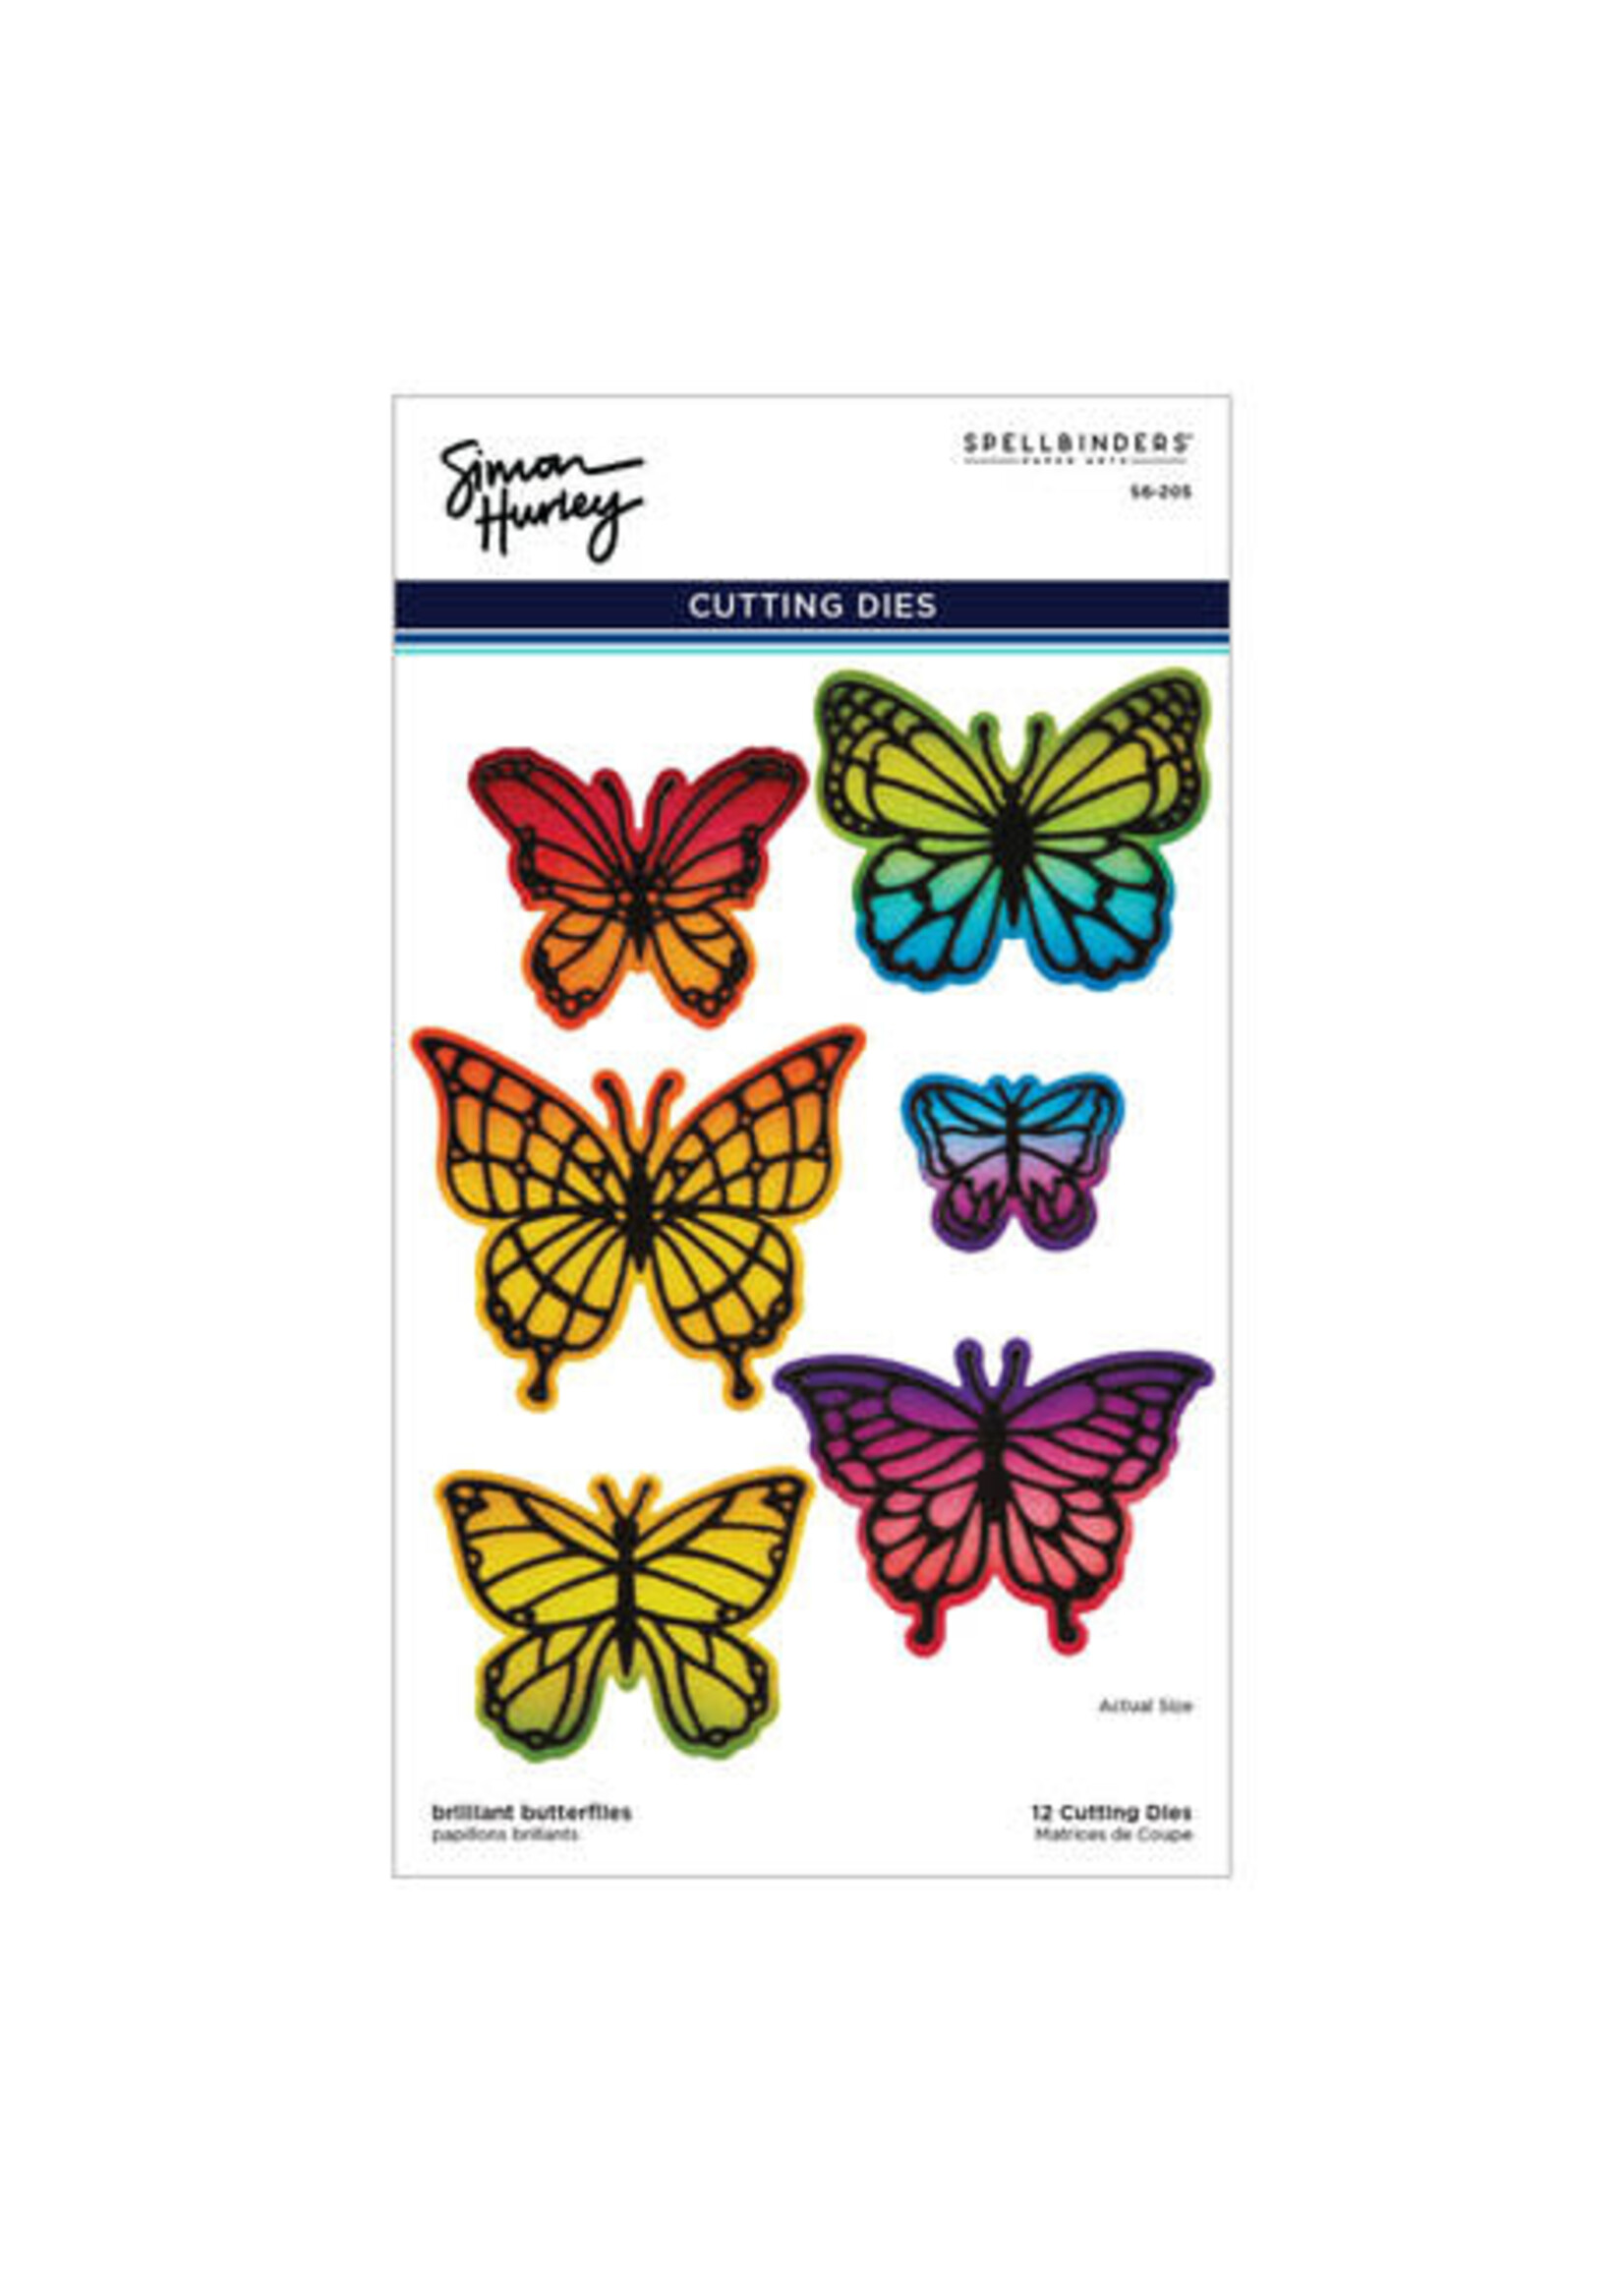 spellbinders Brilliant Butterflies Etched Dies (S6-205)